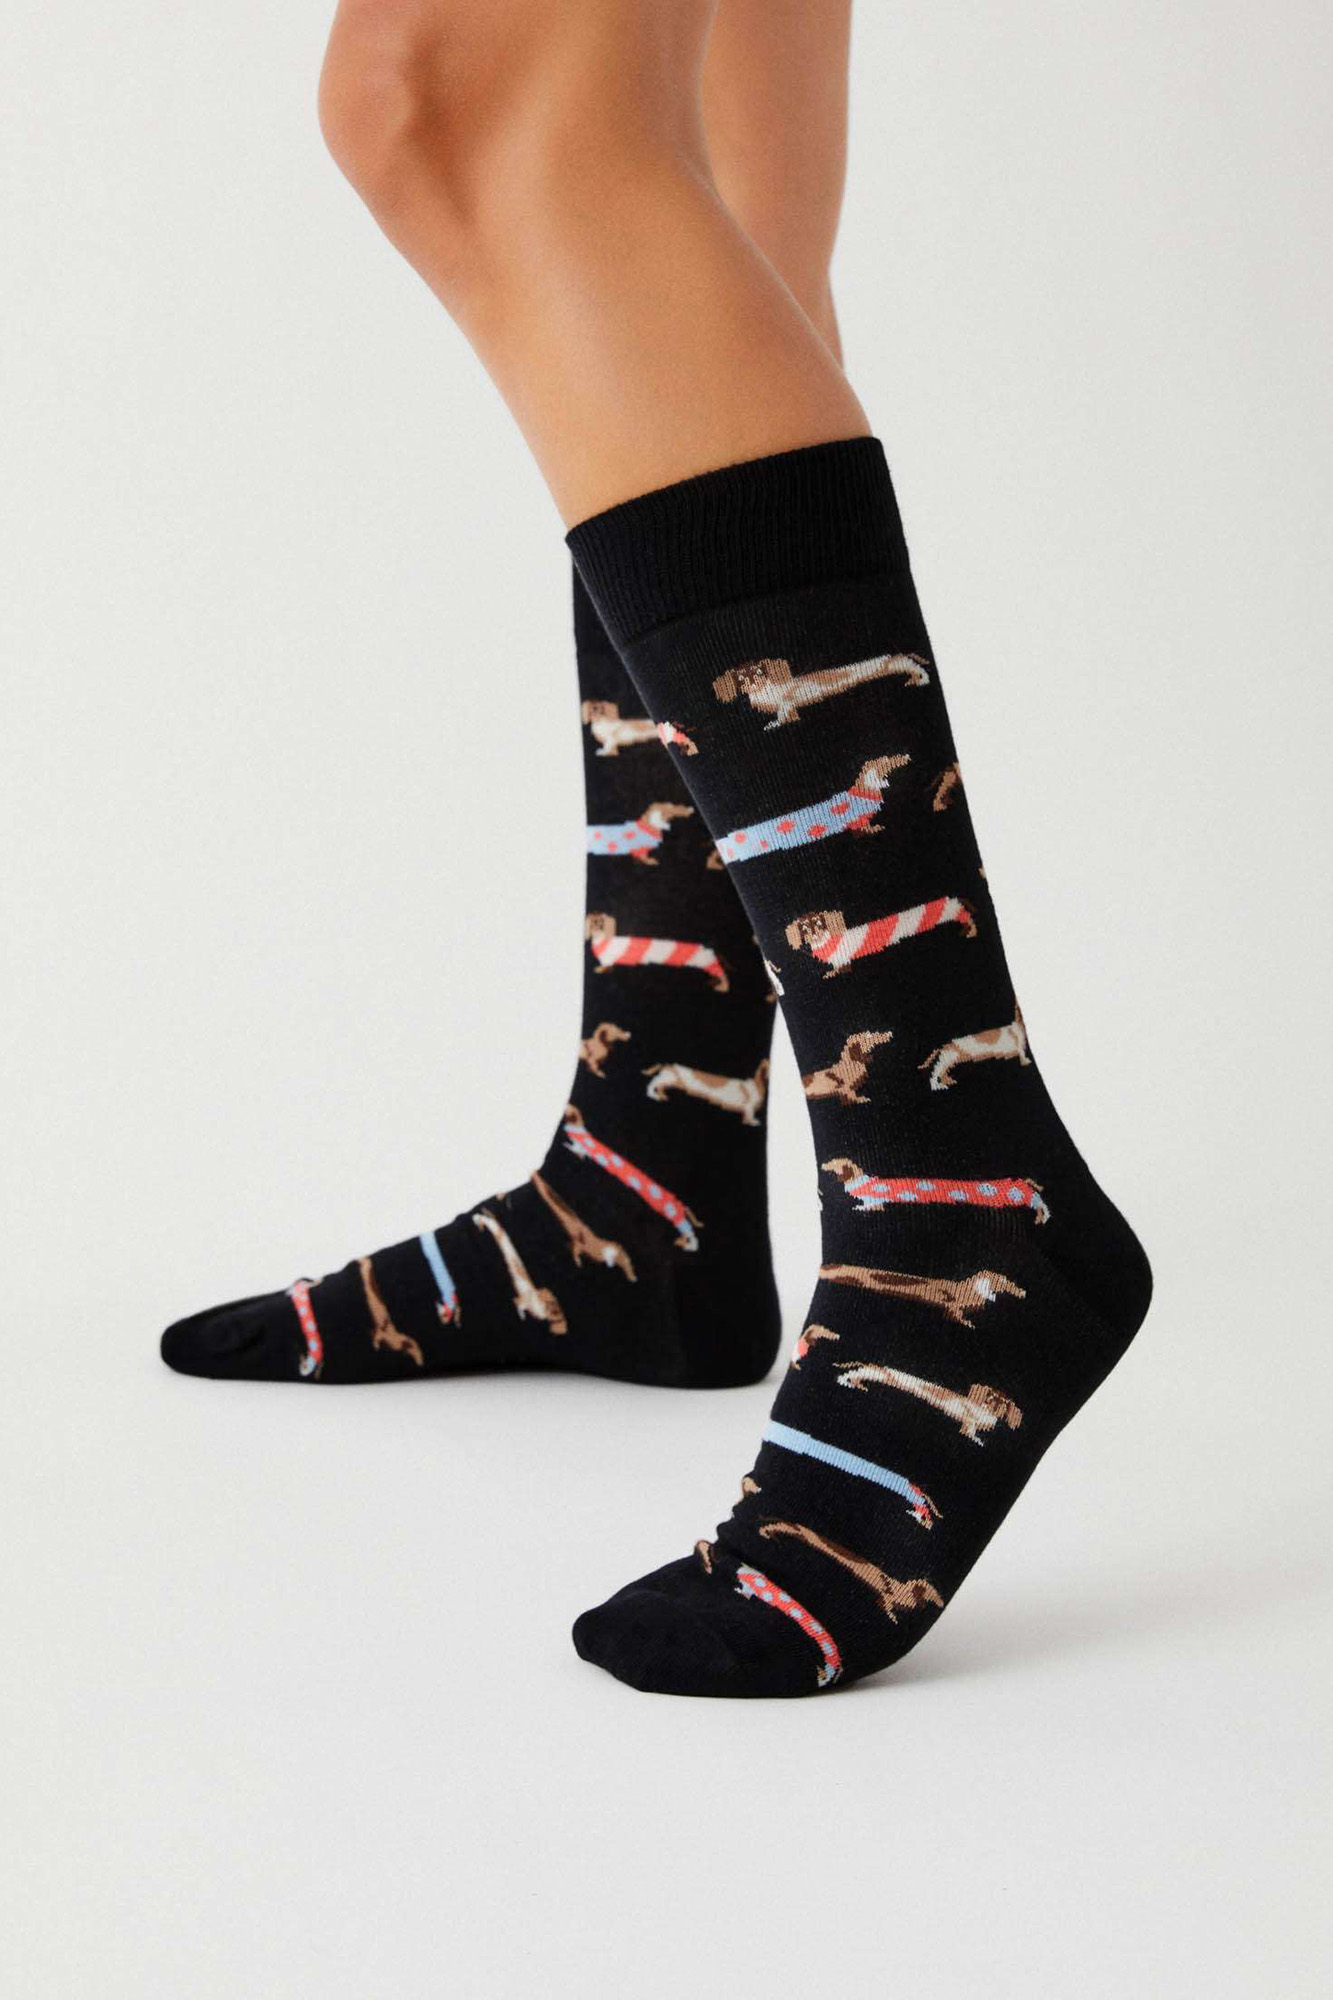 Calcetines De Algodón Specialized Socks Color Negro Afelpados